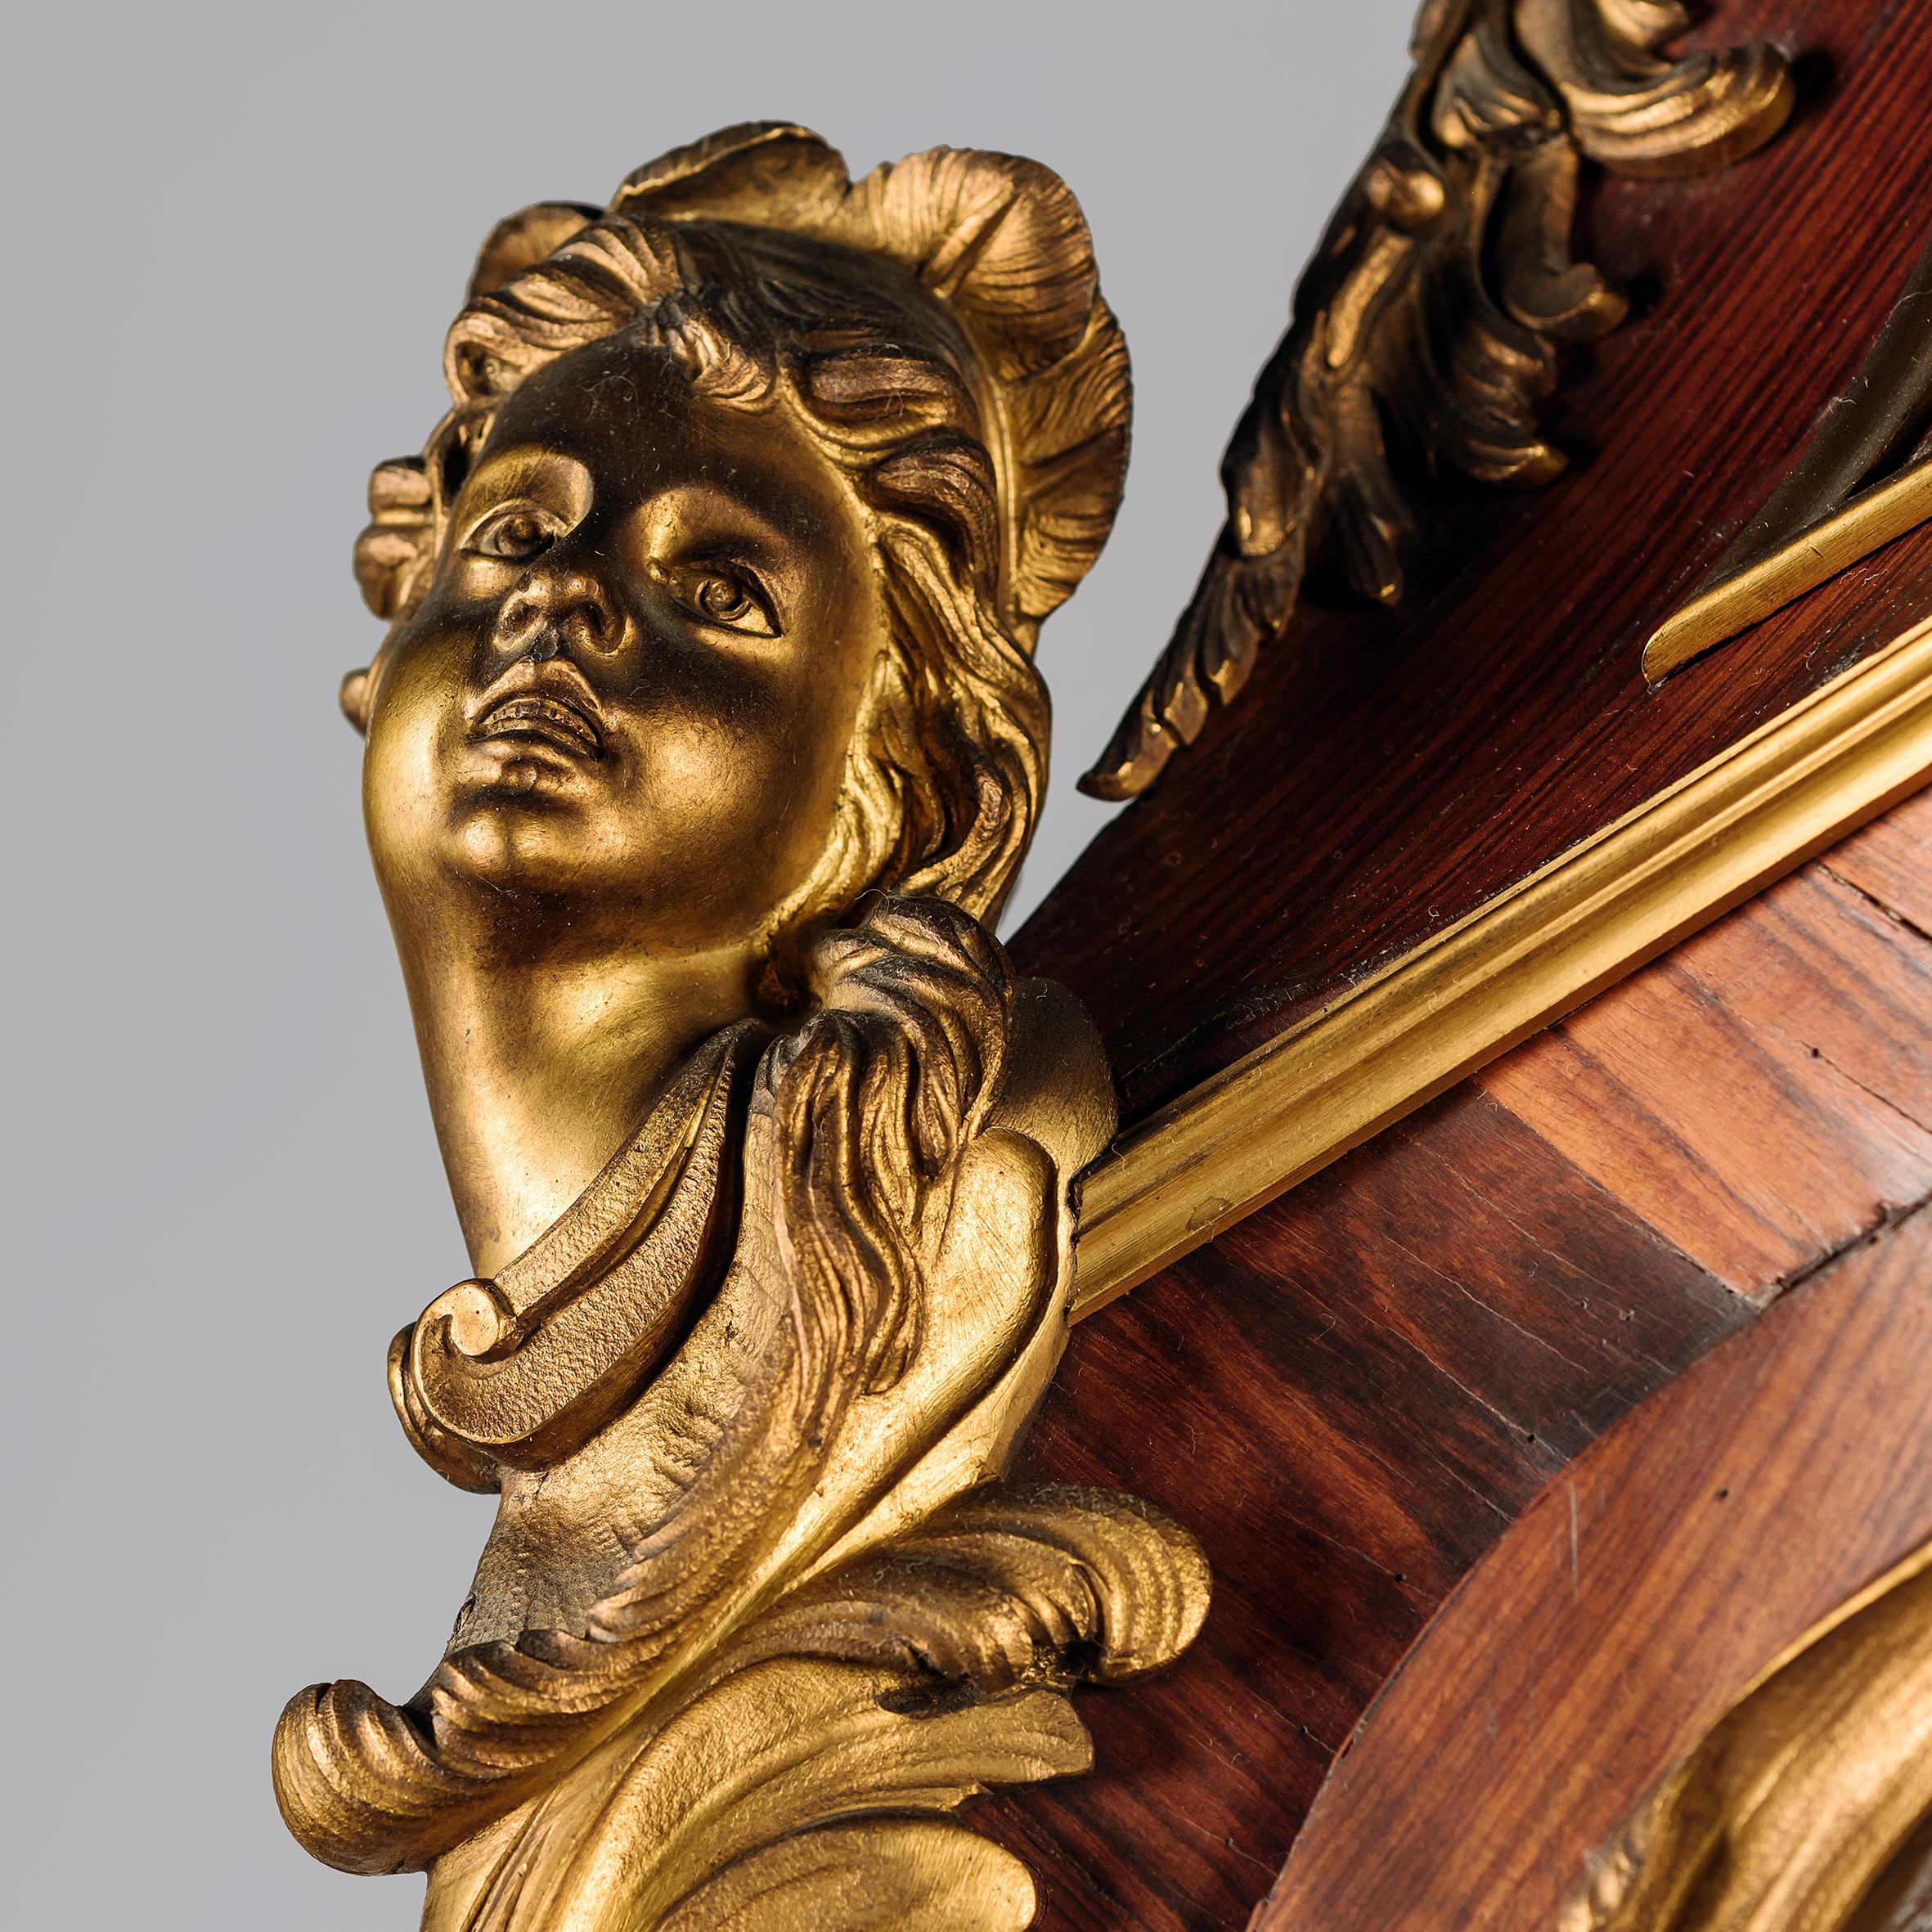 Eine wichtige und äußerst seltene vergoldete Bronze-Bombenvitrine im Louis XV-Stil, die eindeutig Maison Krieger zugeschrieben wird.

Auf der Rückseite der Beschläge an den vier Gesimsecken und den Blumenranken ist das Monogramm LM, möglicherweise